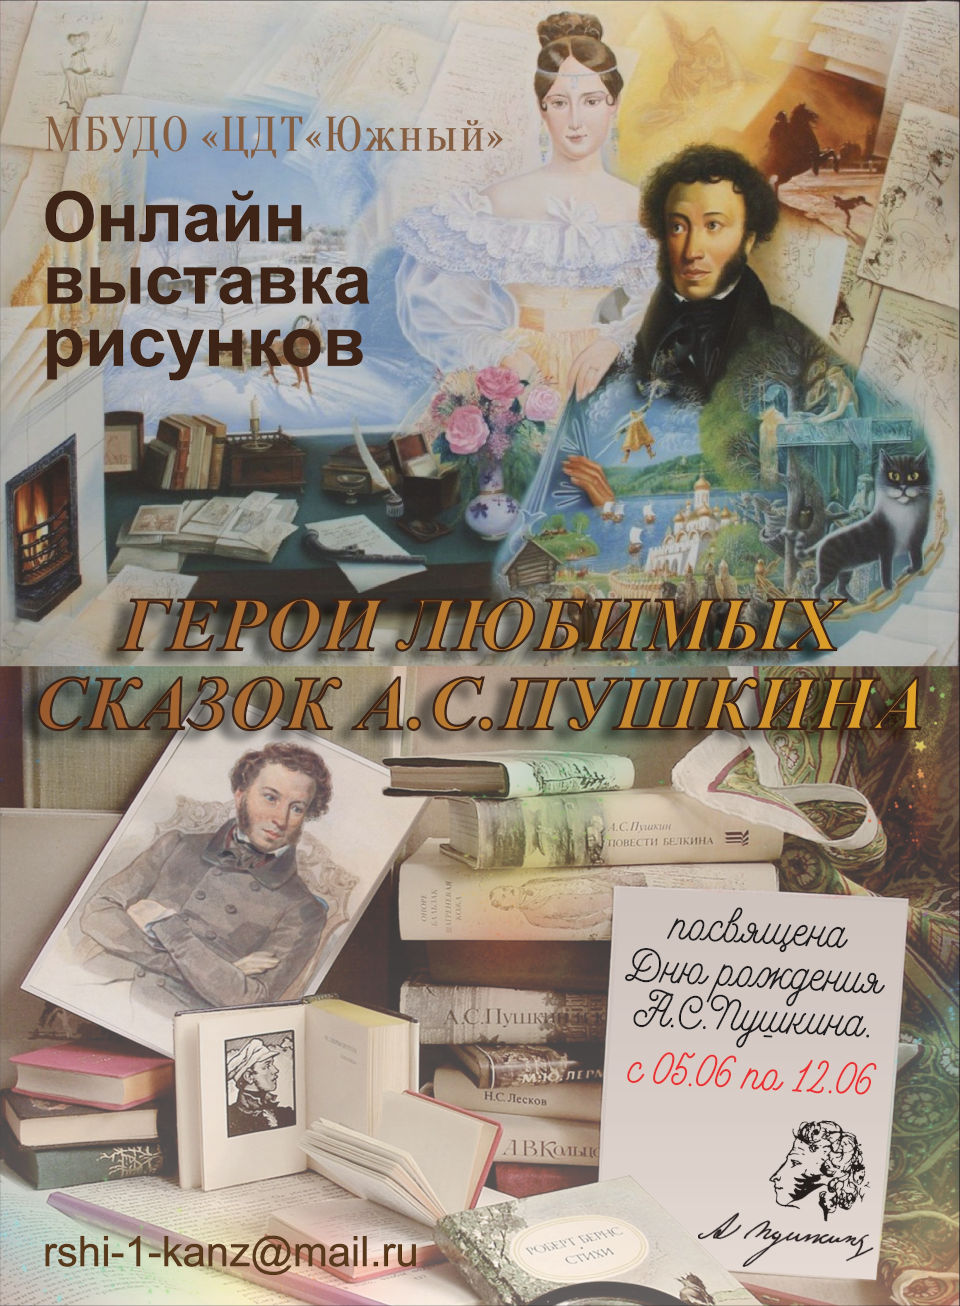 Онлайн выставка рисунков «Герои любимых сказок А.С. Пушкина»